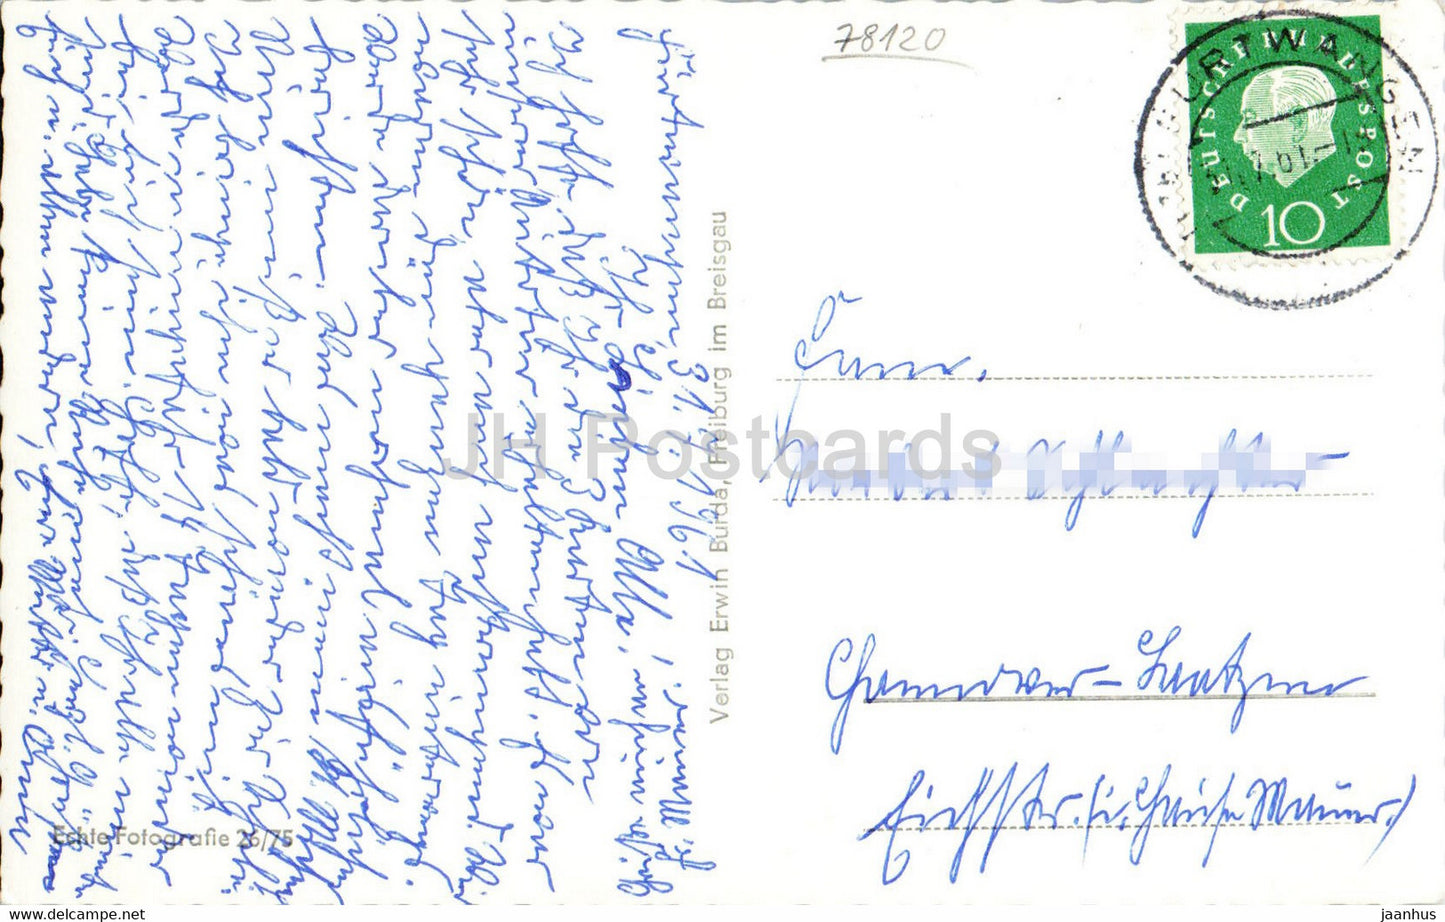 Hohenkurort Furtwangen 850 1150 m - alte Postkarte - 1961 - Deutschland - gebraucht